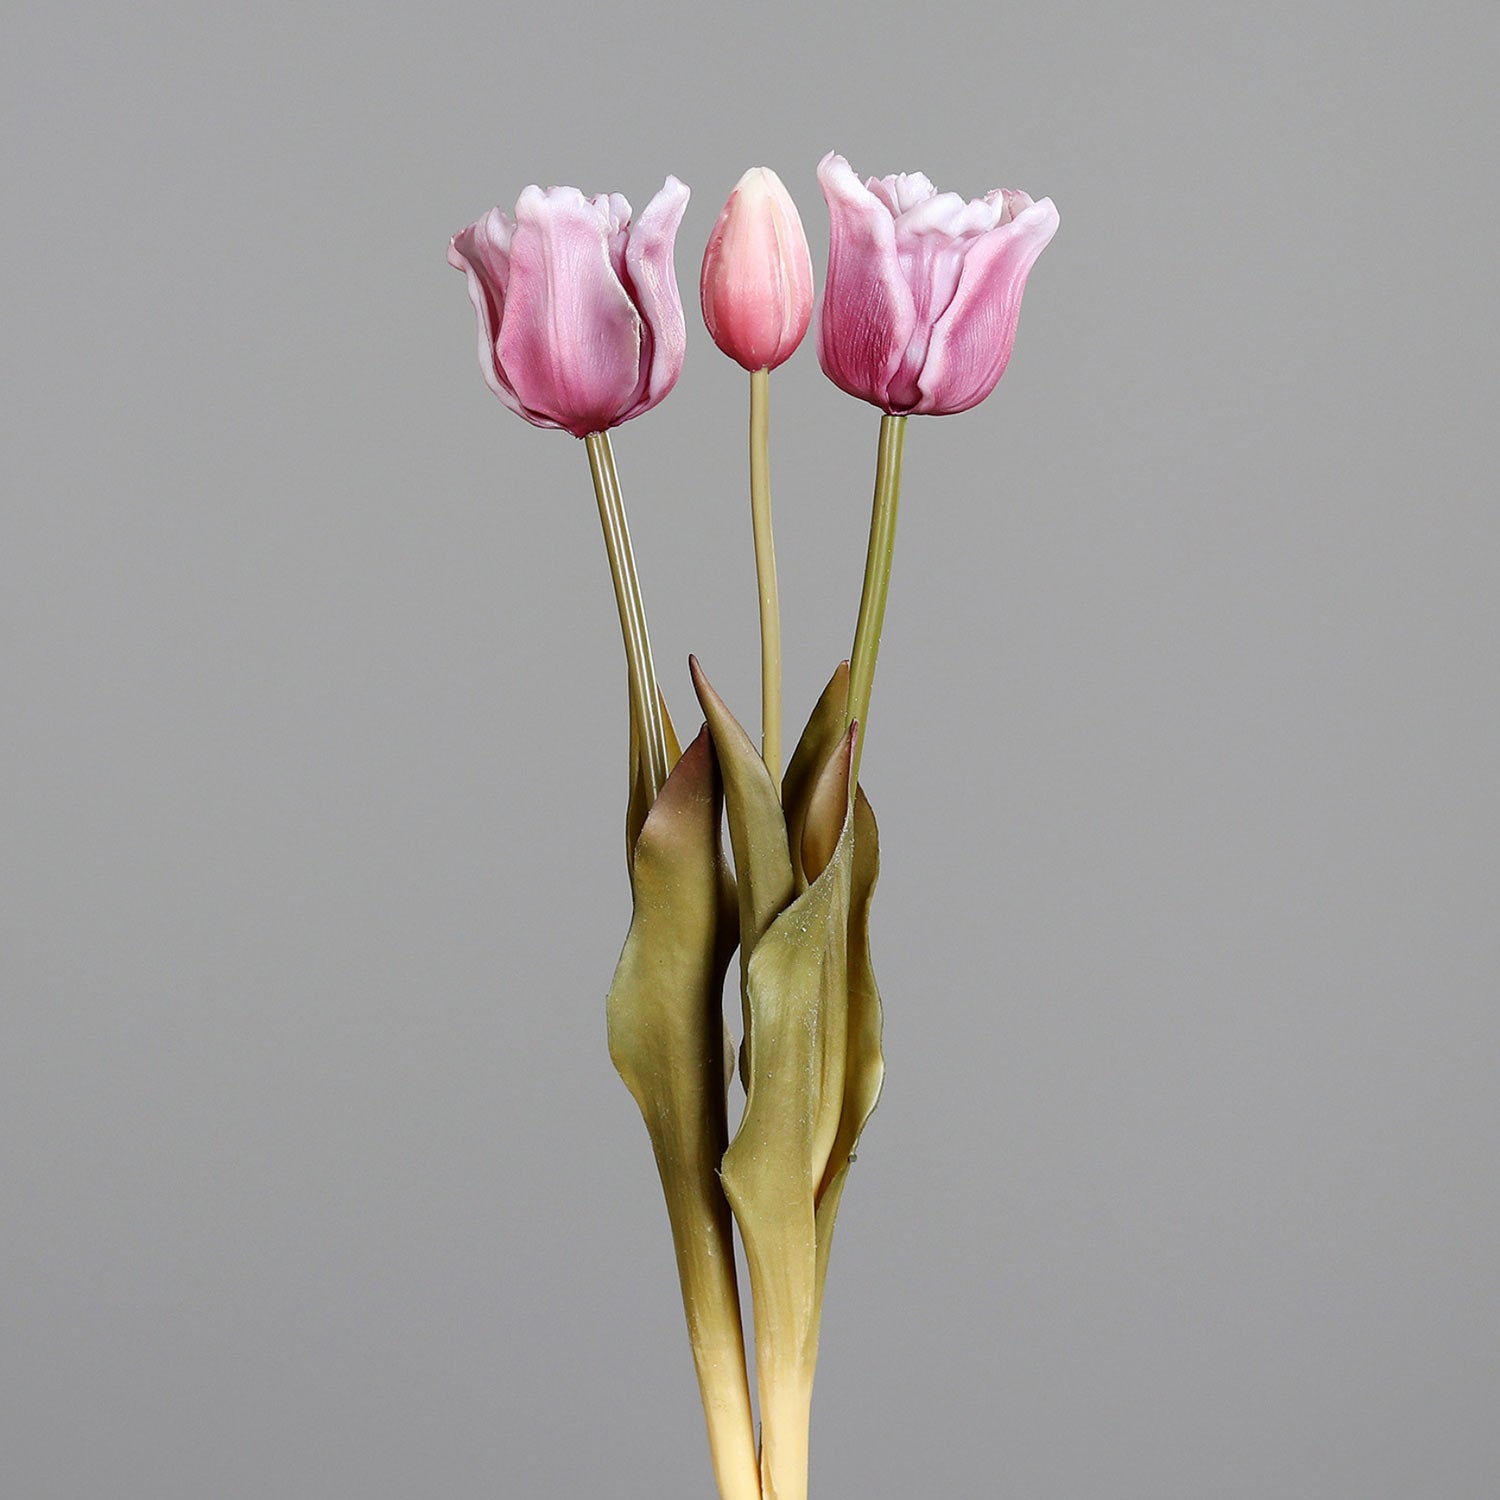 Fáradt lila színvilágú, vintage stílusú, 3 szálból álló tulipán csokor művirág, nyílt és bimbos virágfejekkel .